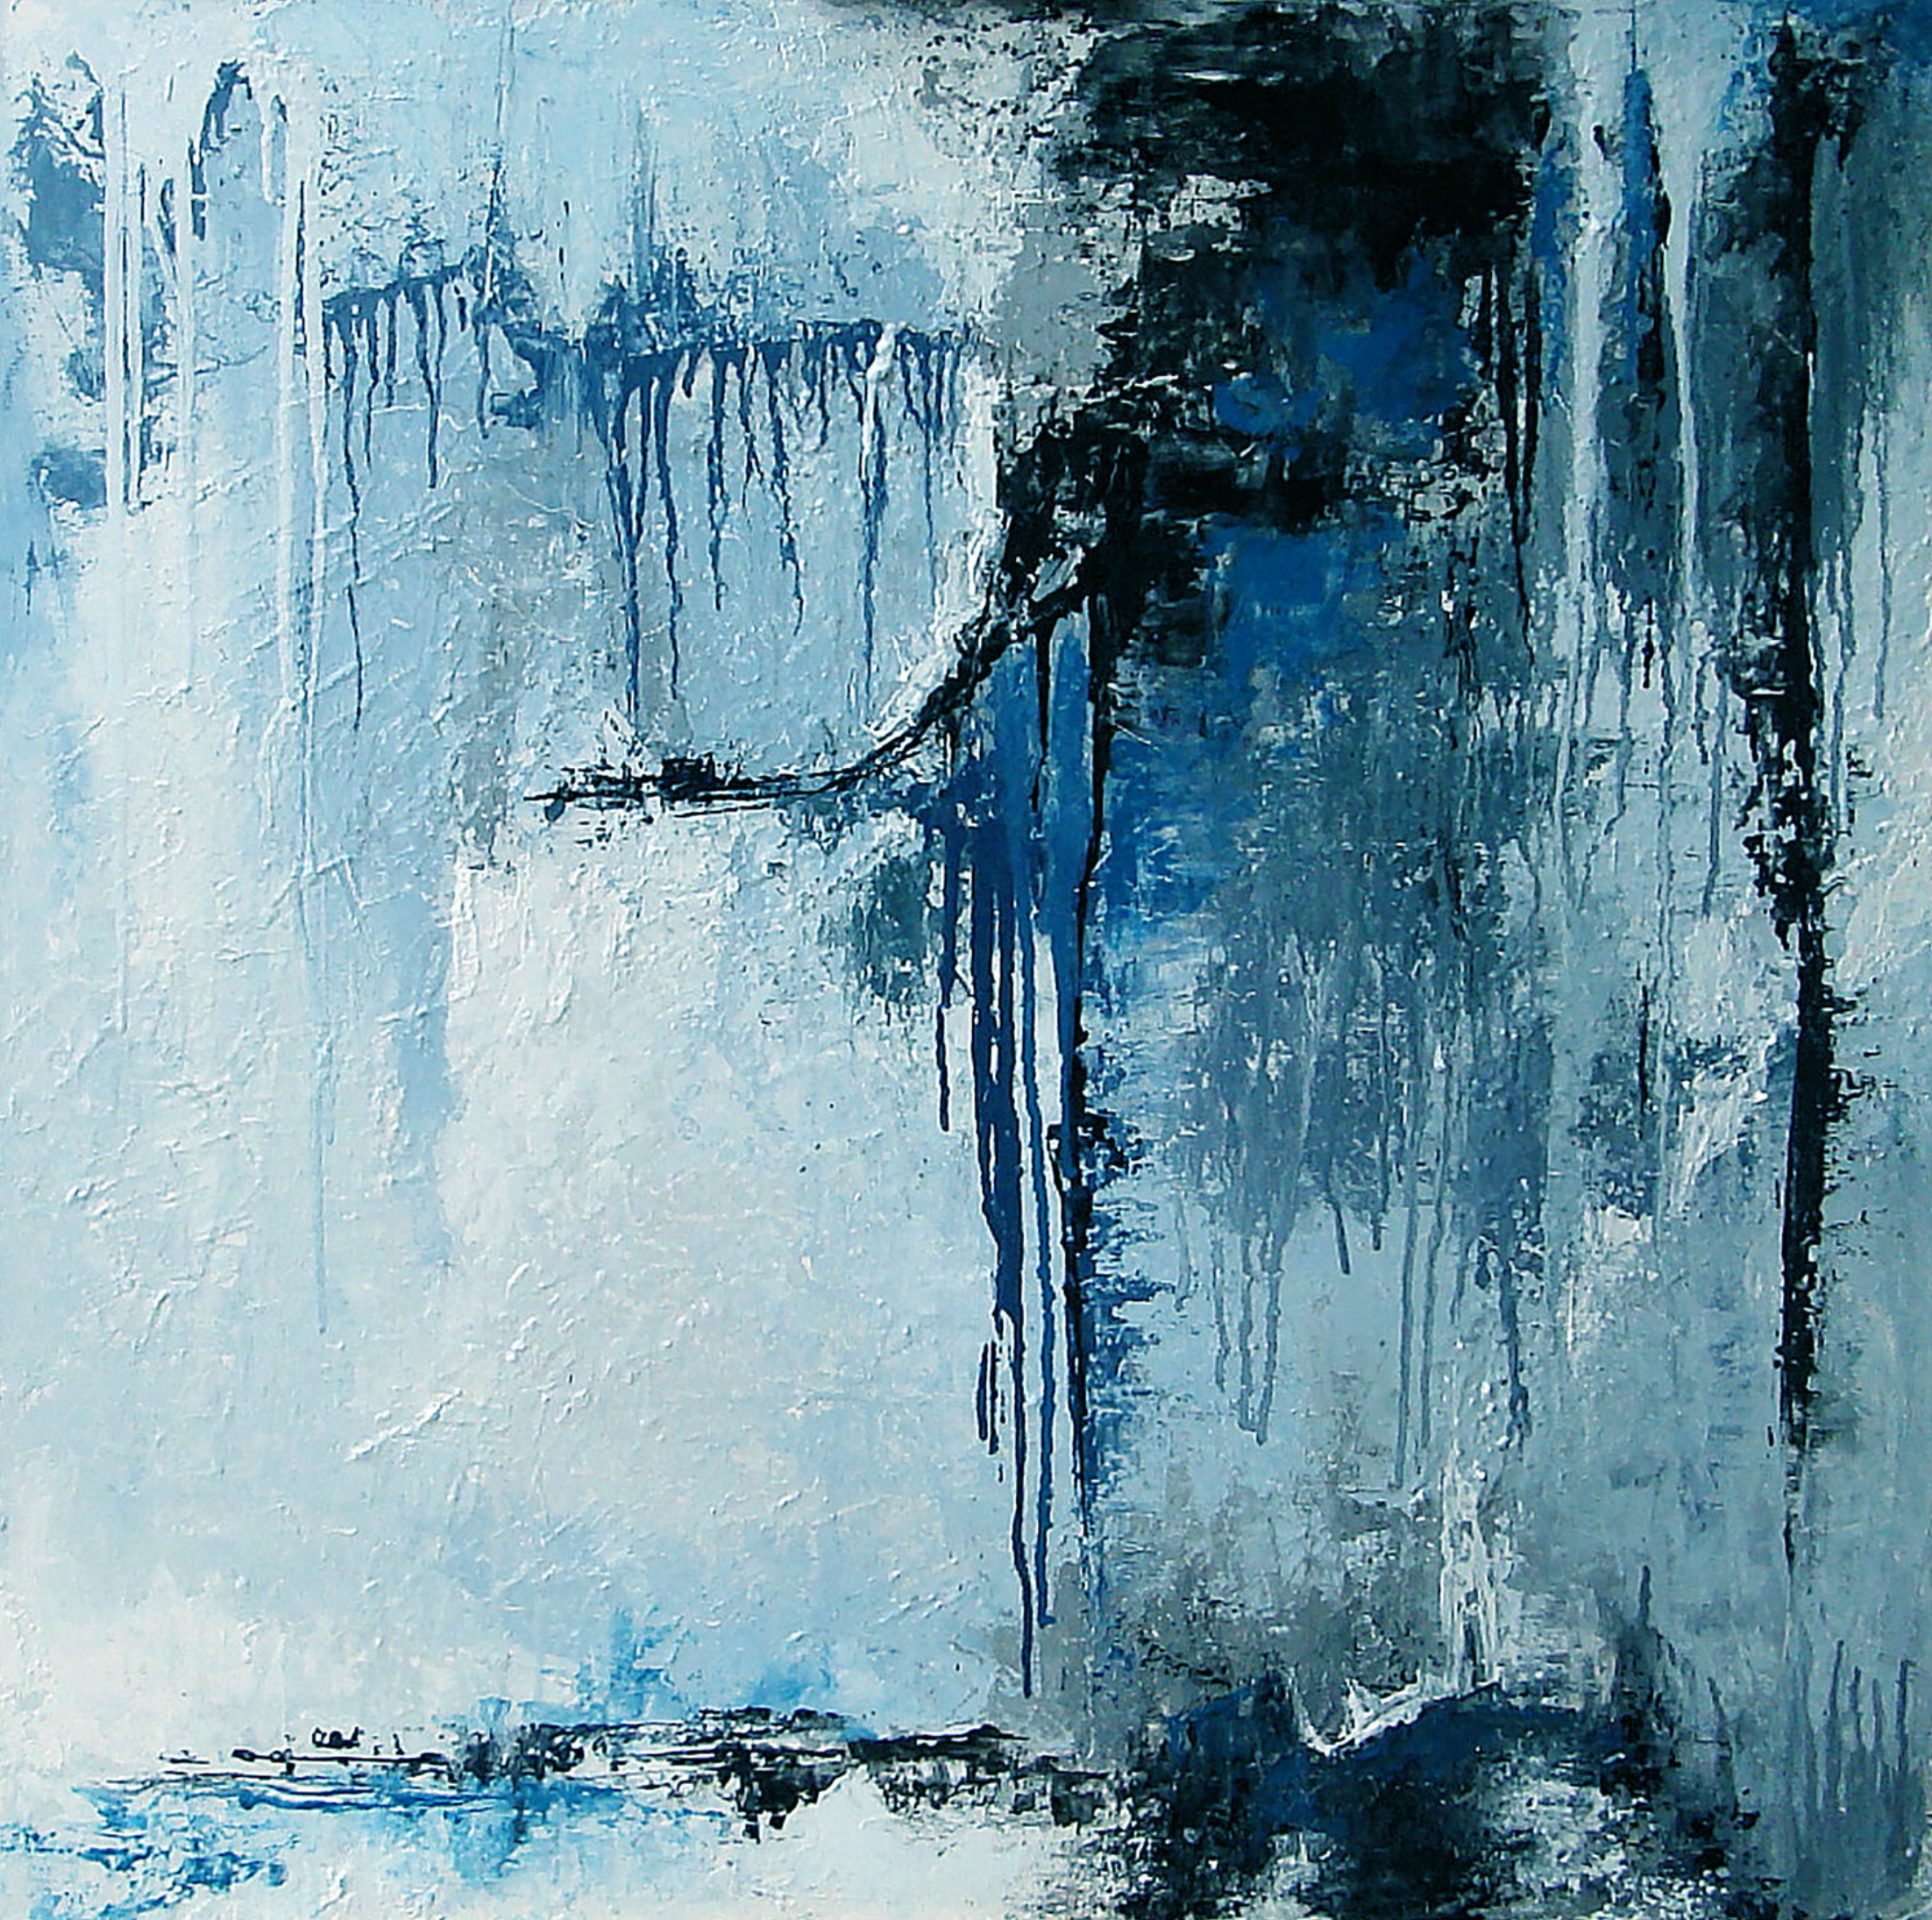 La peinture abstraite "Acier" de Françoise Dugourd-Caput présente des impressions de métal en fusion dégoulinant sur des reliefs évoquant un mur ou une falaise abrupte de matière grise et bleue délimitée par le bleu minuit. Une atmosphère froide